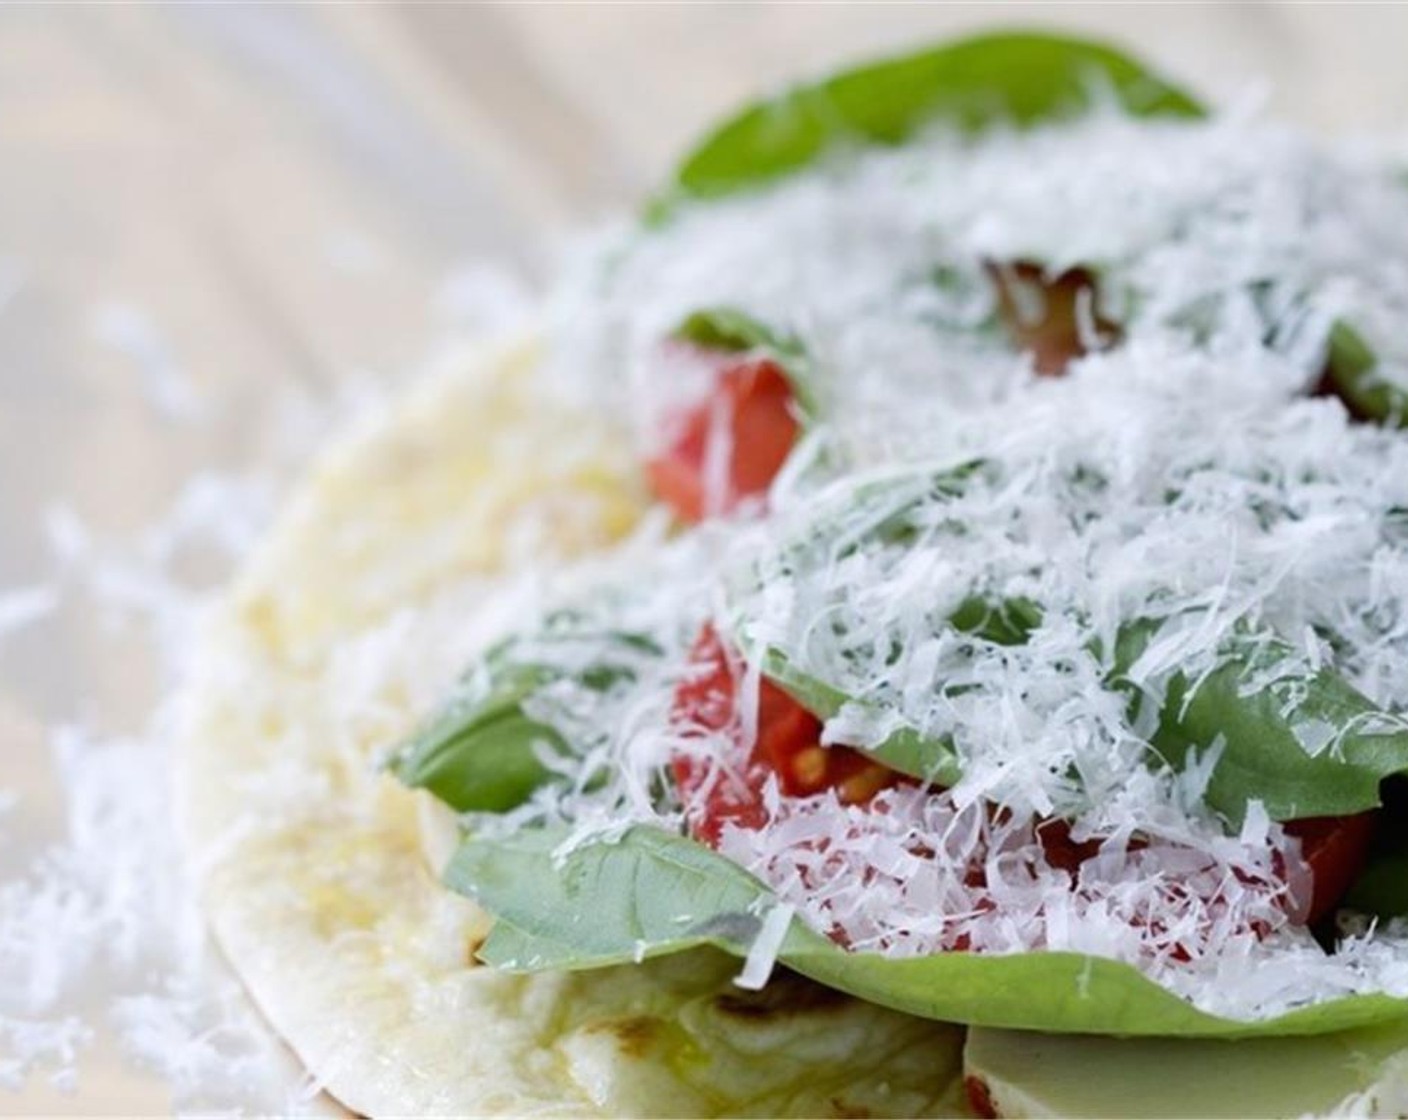 Schritt 3 Auf jedes Fladenbrot Tomatenscheiben (2) legen. Mozzarella (115 g) darauf streuen und Basilikum (1 Bd.) darüber legen. Zum Schluss mit Parmesan (35 g) toppen.